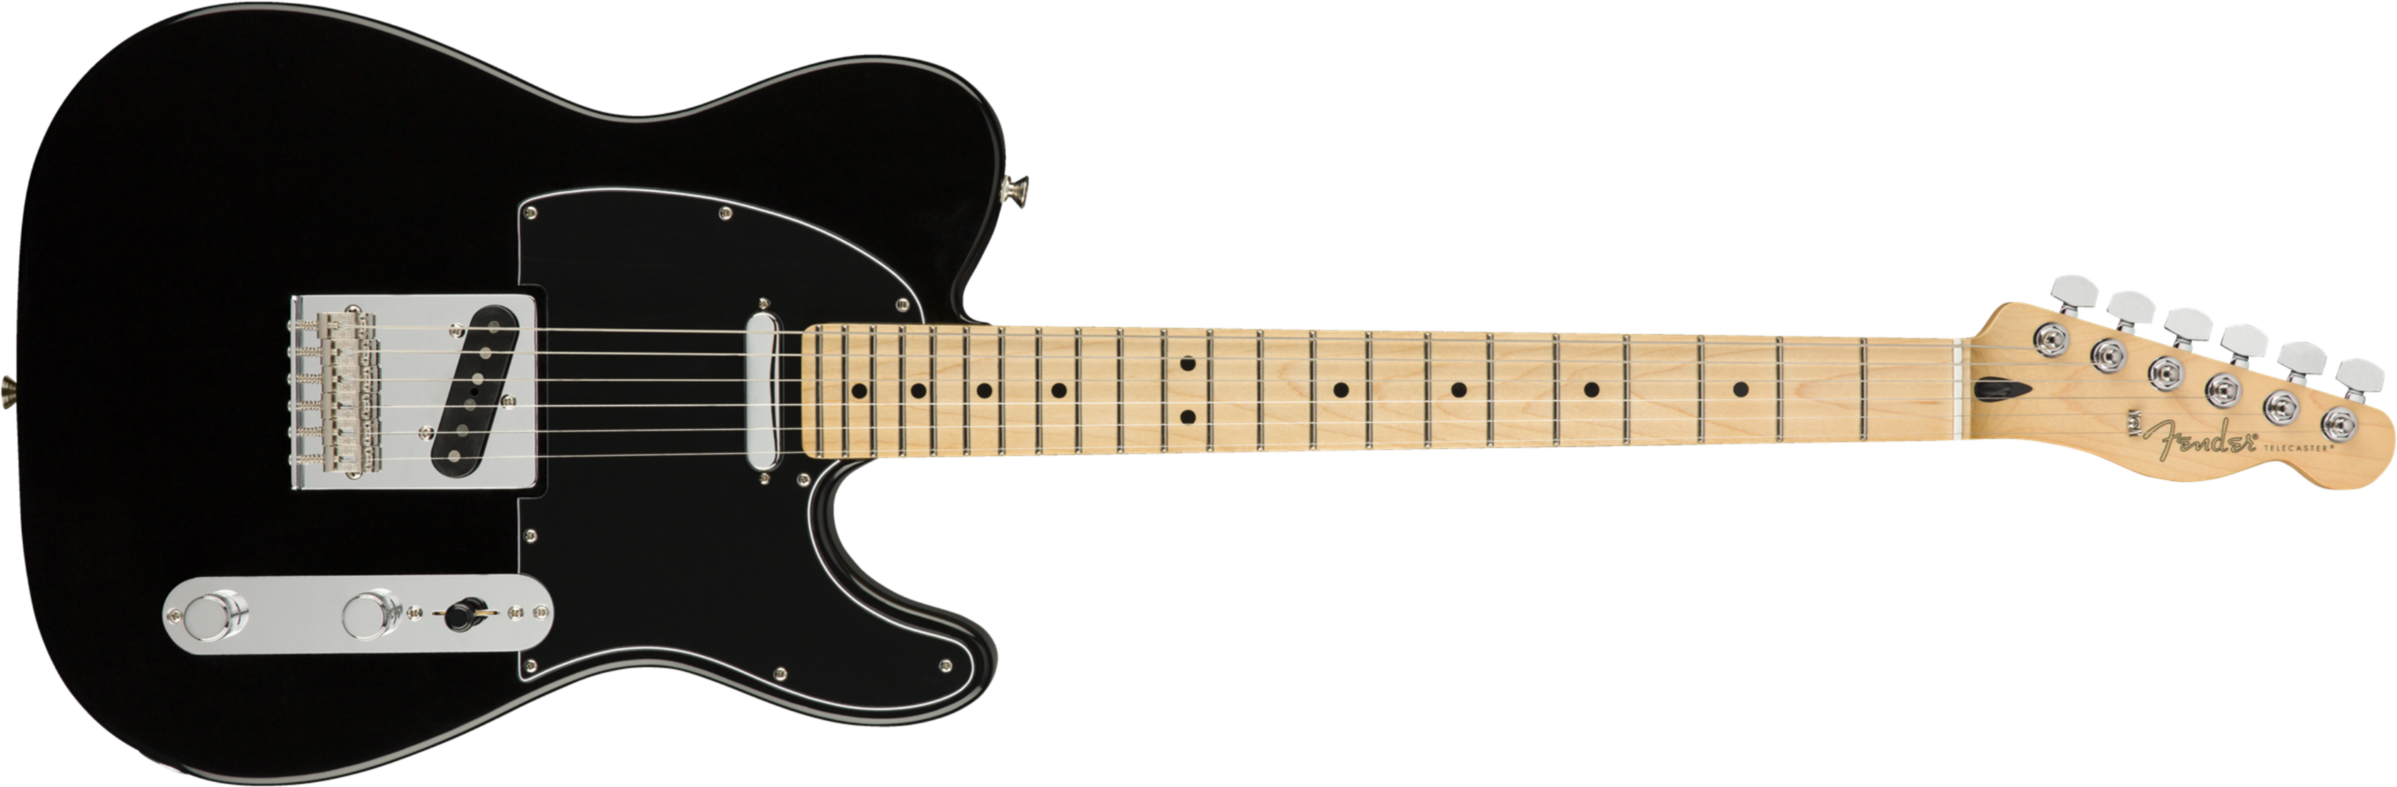 Fender Tele Player Mex Mn - Black - Televorm elektrische gitaar - Main picture